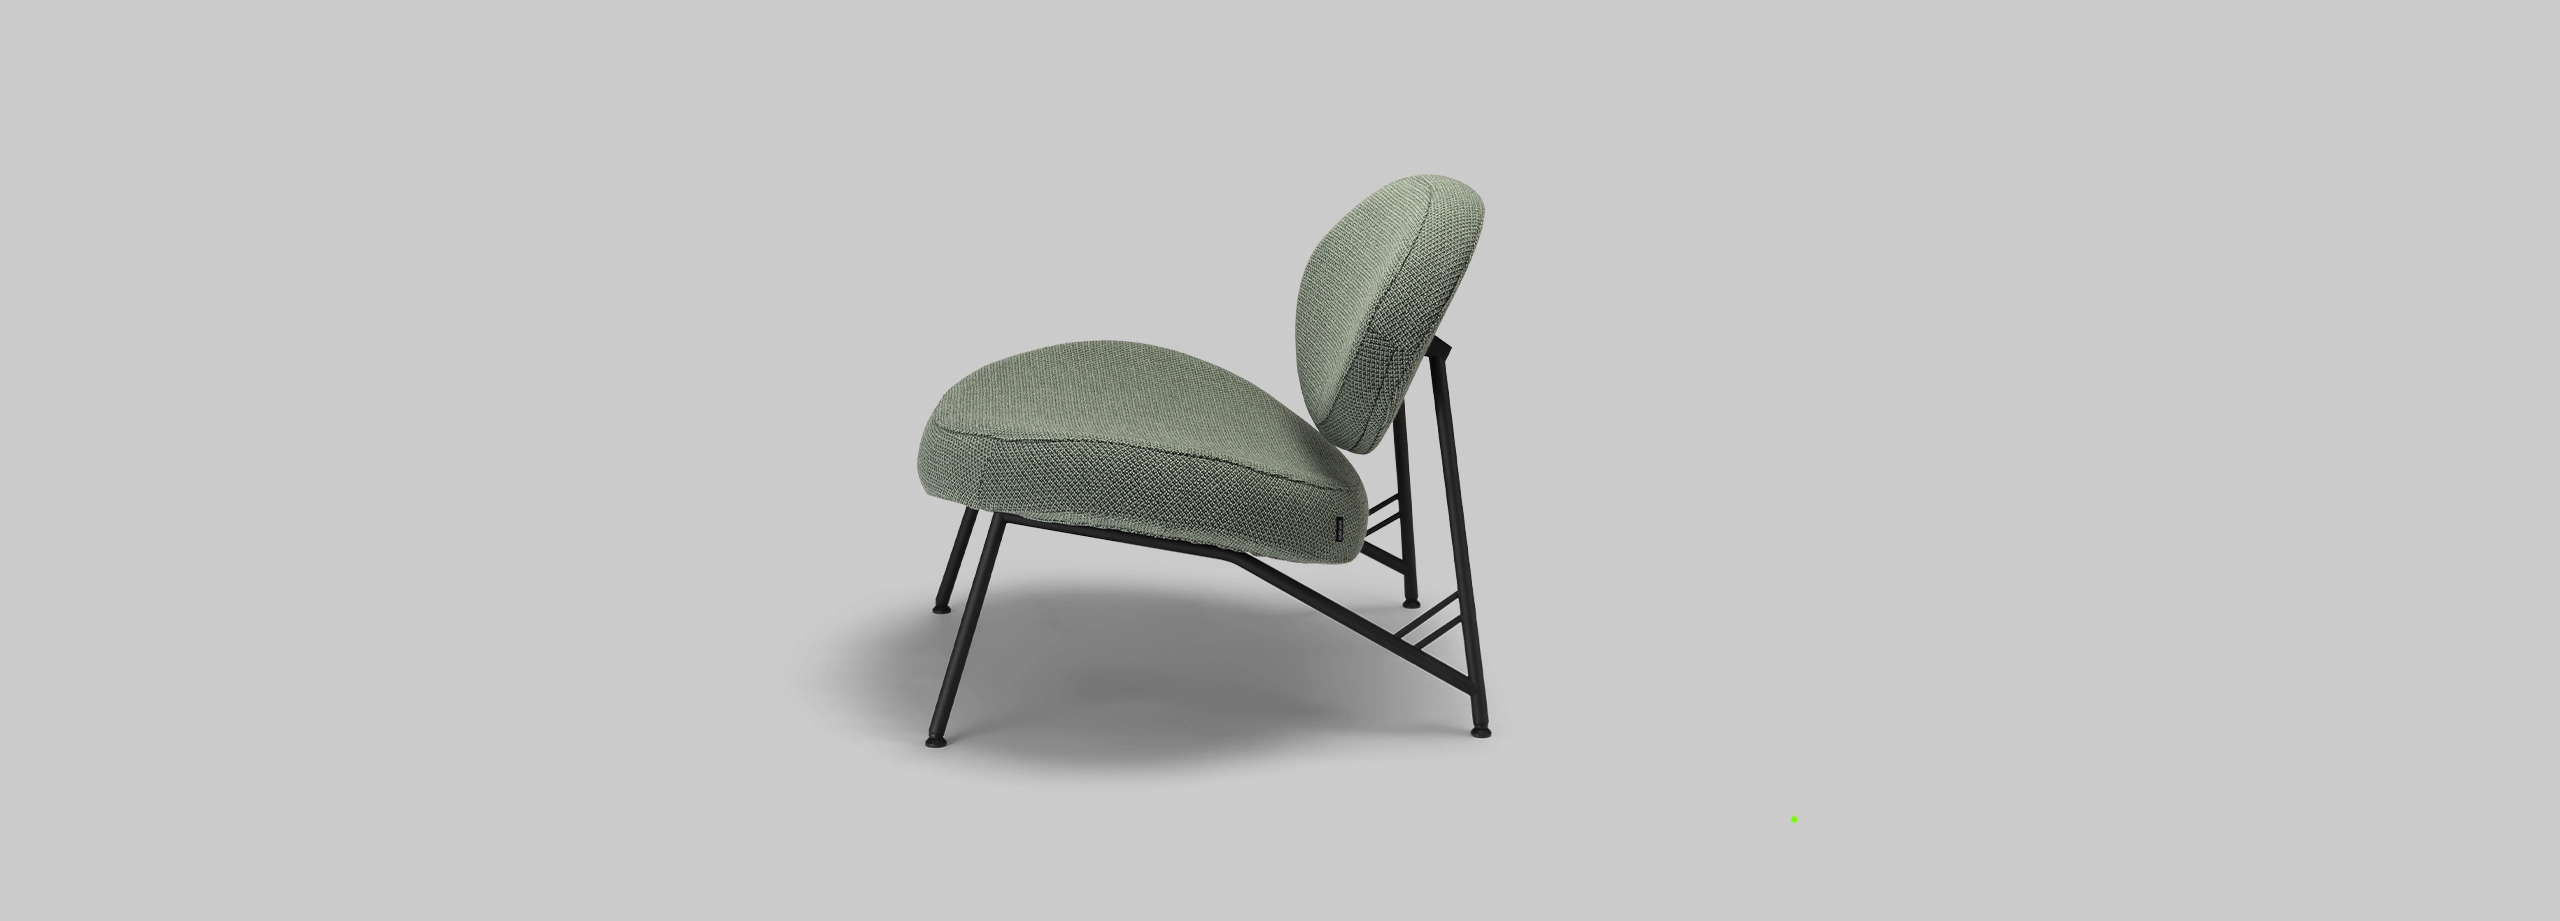 Harvink fauteuil Tipi in stof Cleo groen met frame RAL 6009 dennen groen fijnstructuur